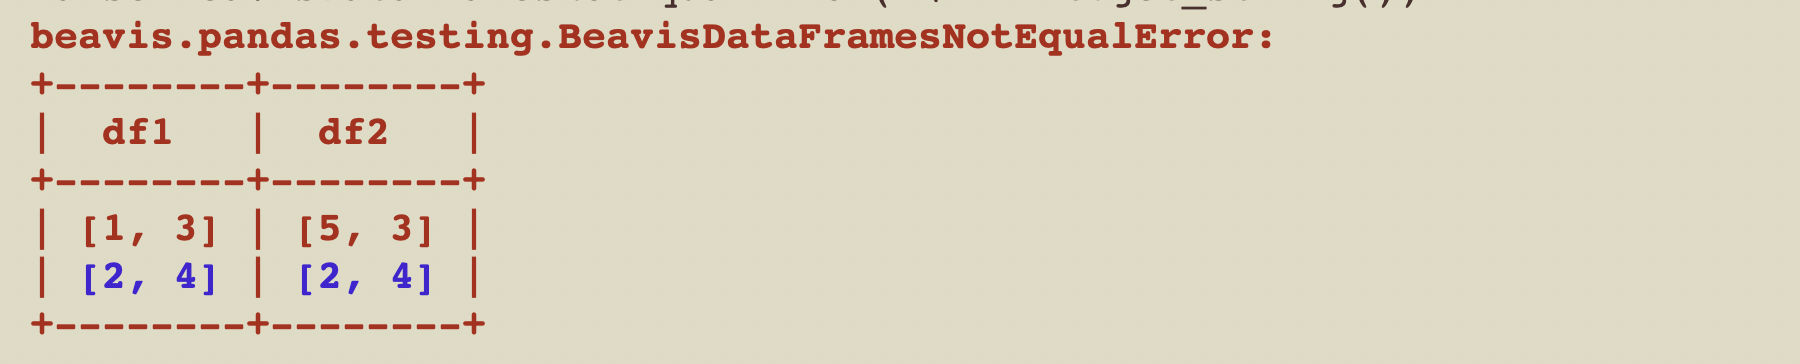 beavis_dataframes_not_equal_error